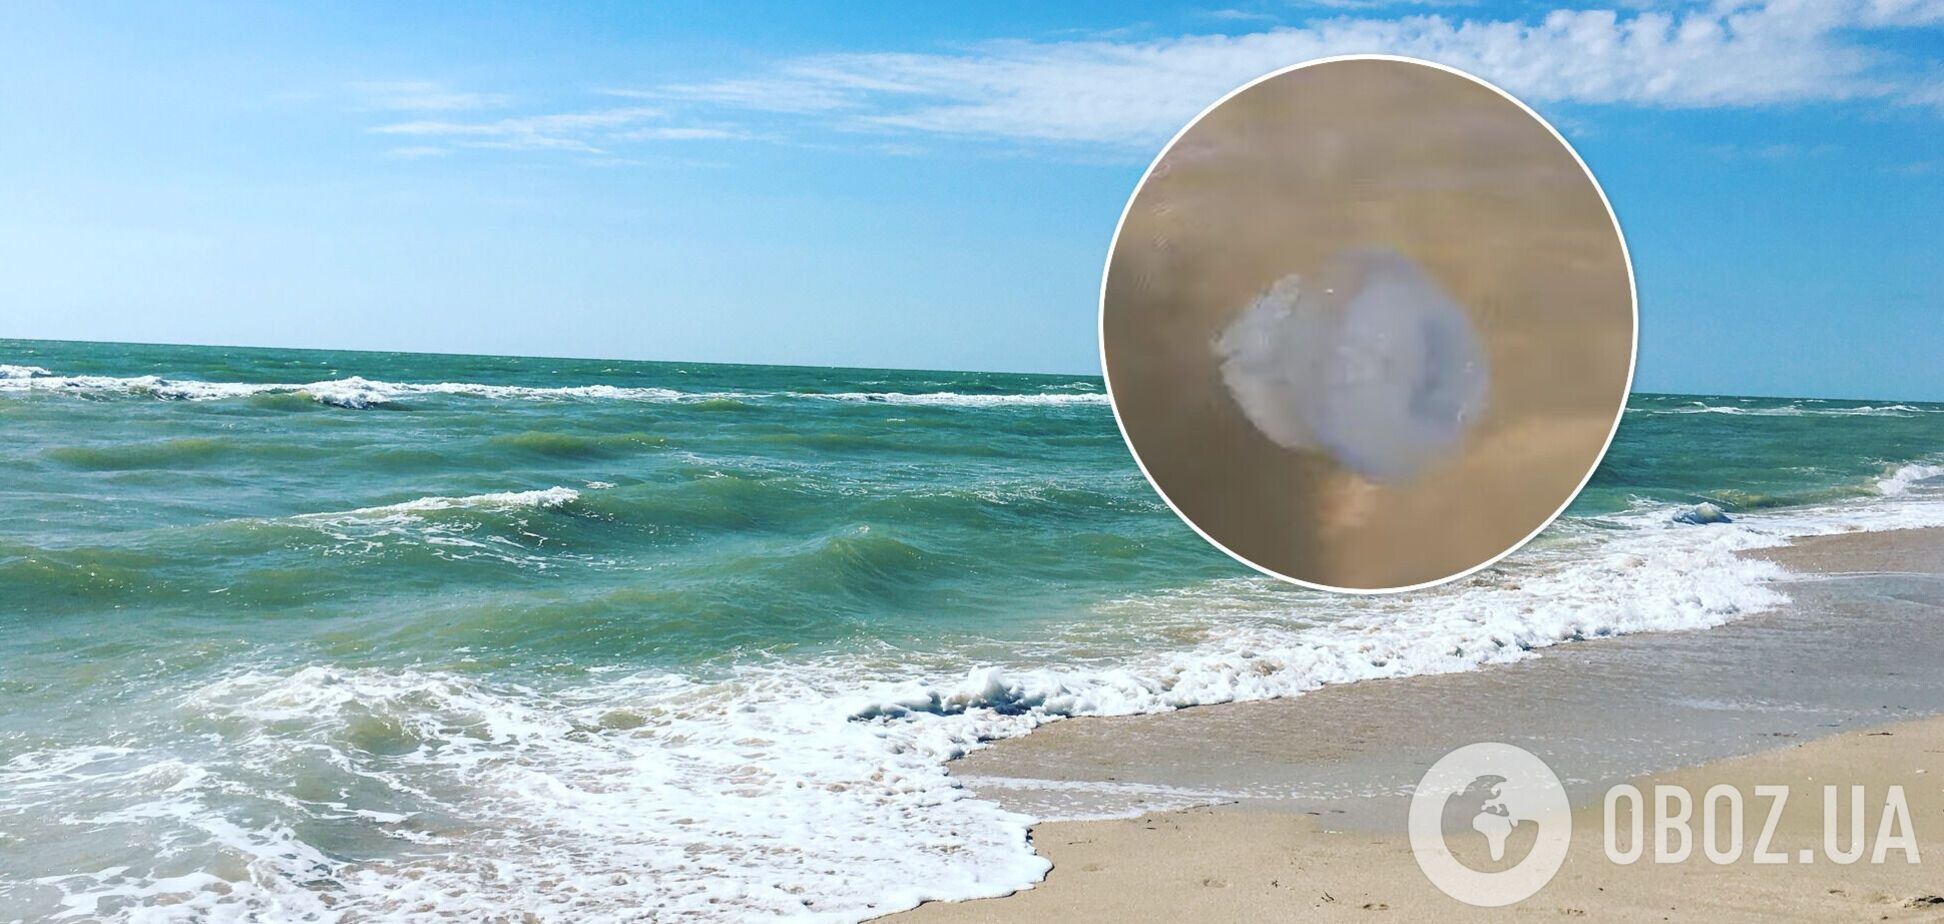 Барьерные сети спасают от медуз, но везет не всем: турист показал печальные реалии Кирилловки. Видео